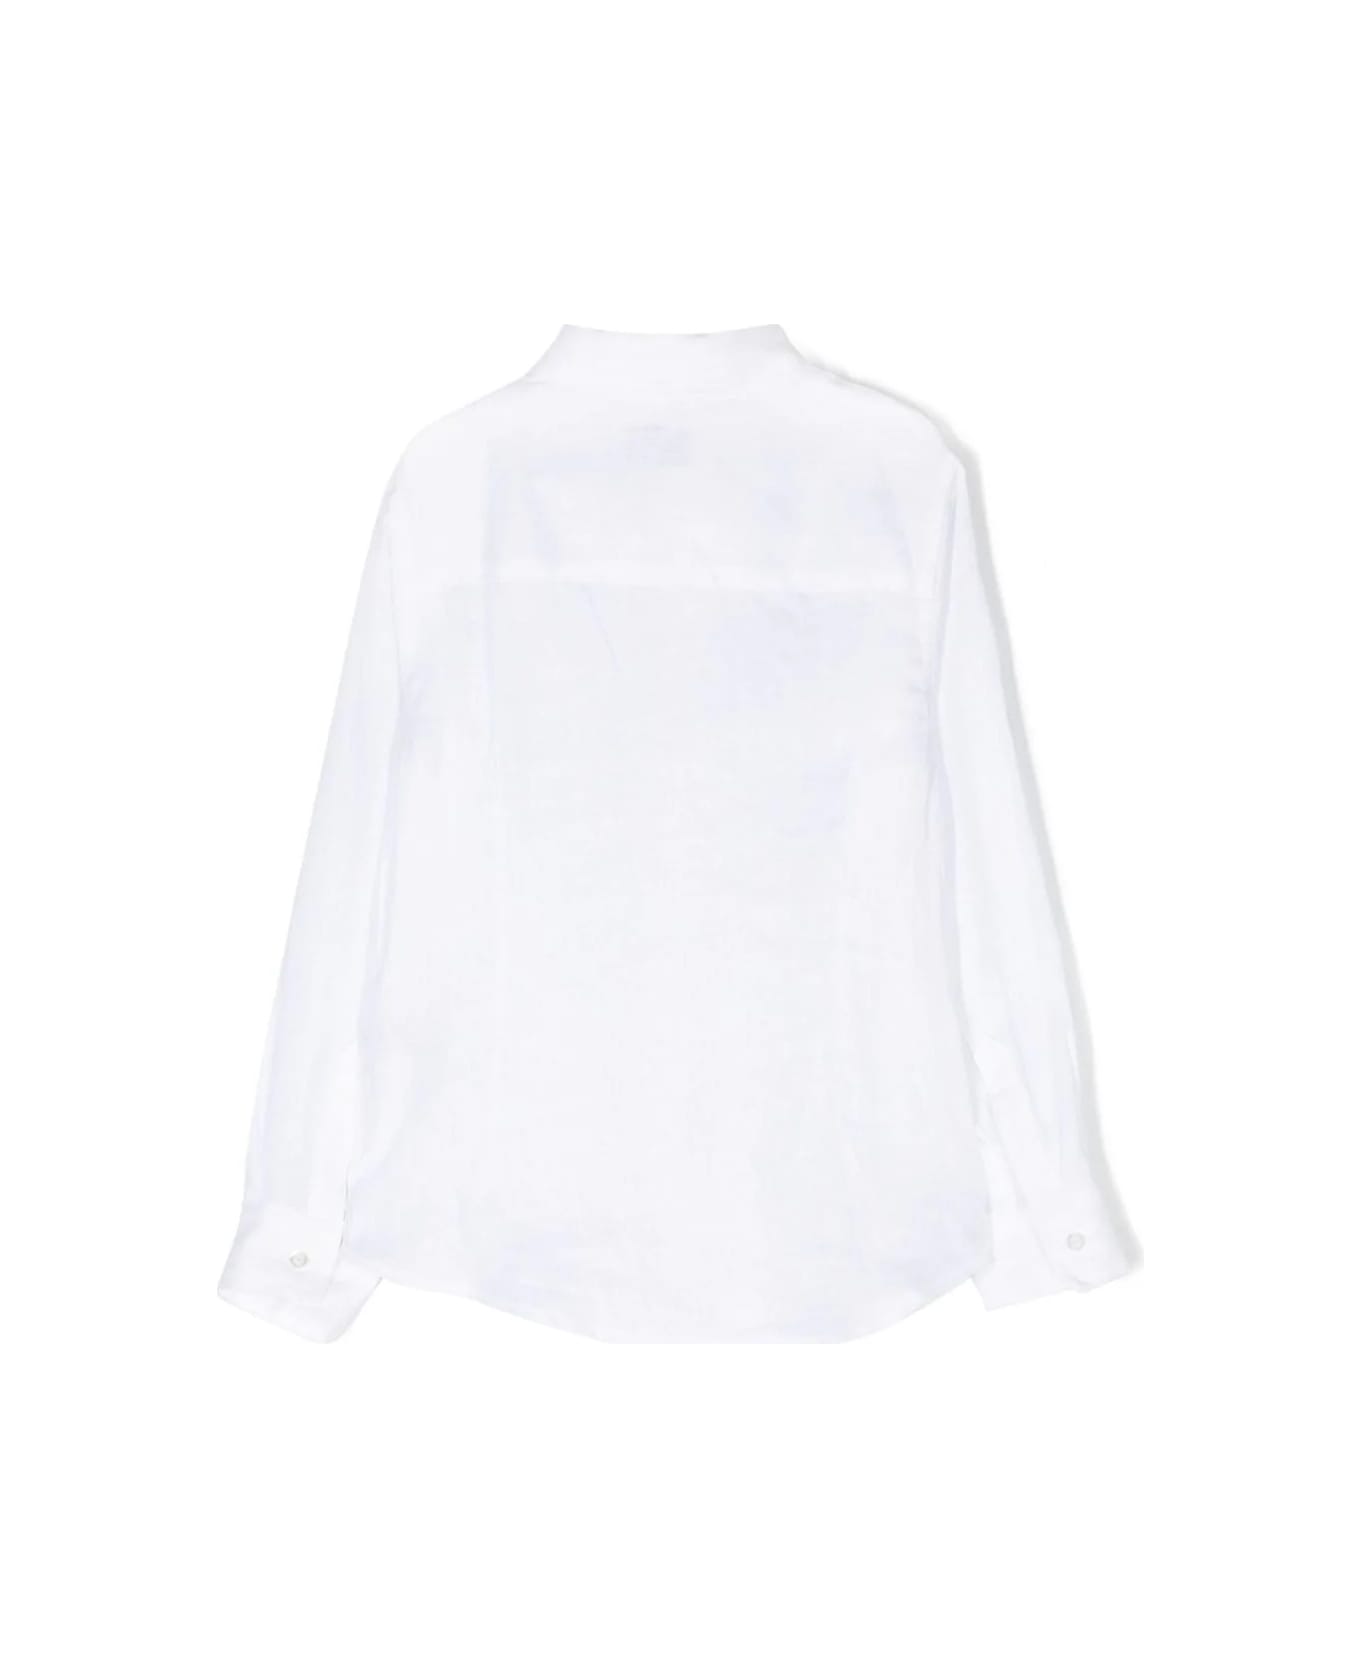 Fay White Linen Shirt - White シャツ